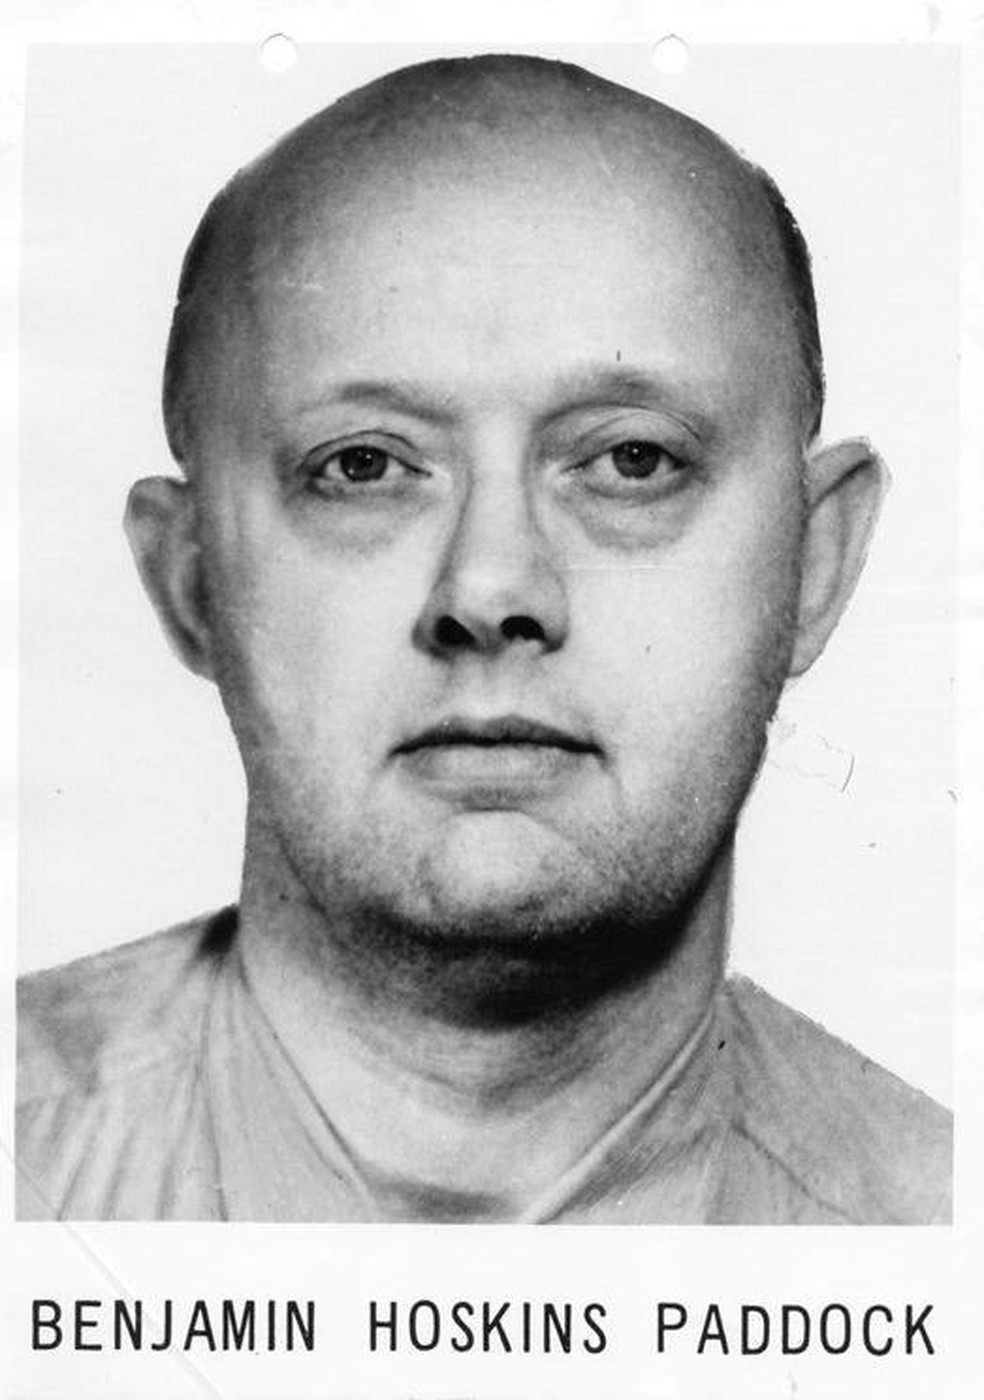 Benjamin Hoskins Paddock, pai do atirador Stephen Paddock, em uma foto do FBI  (Foto: Courtesy FBI/Handout via Reuters)